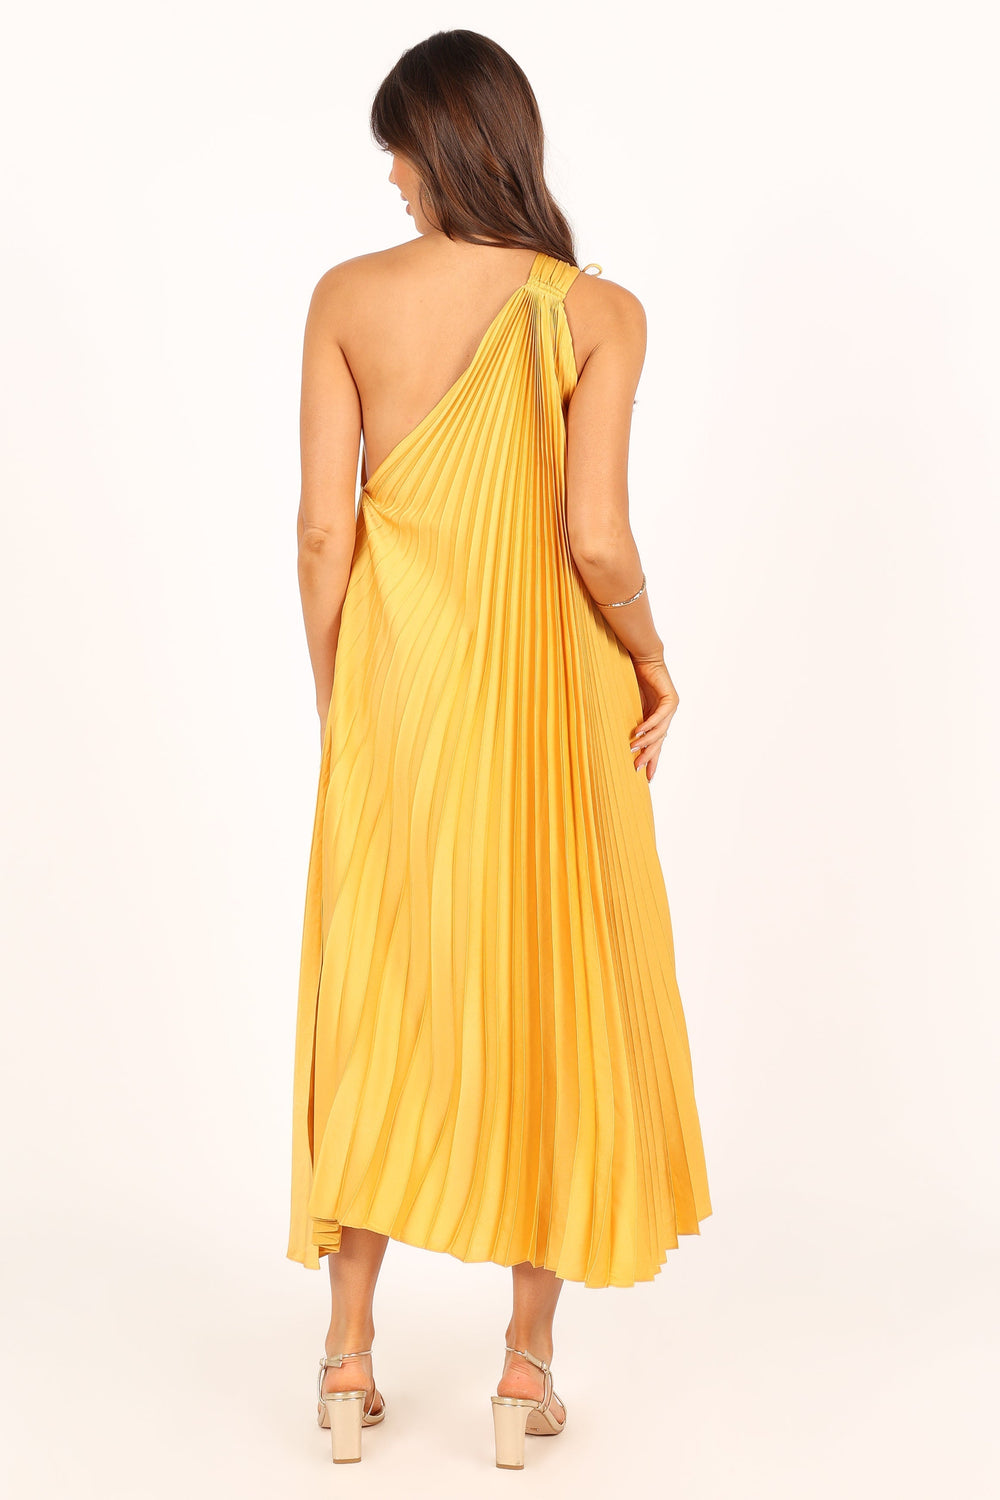 Petal and Pup USA DRESSES Cali One Shoulder Maxi Dress - Saffron